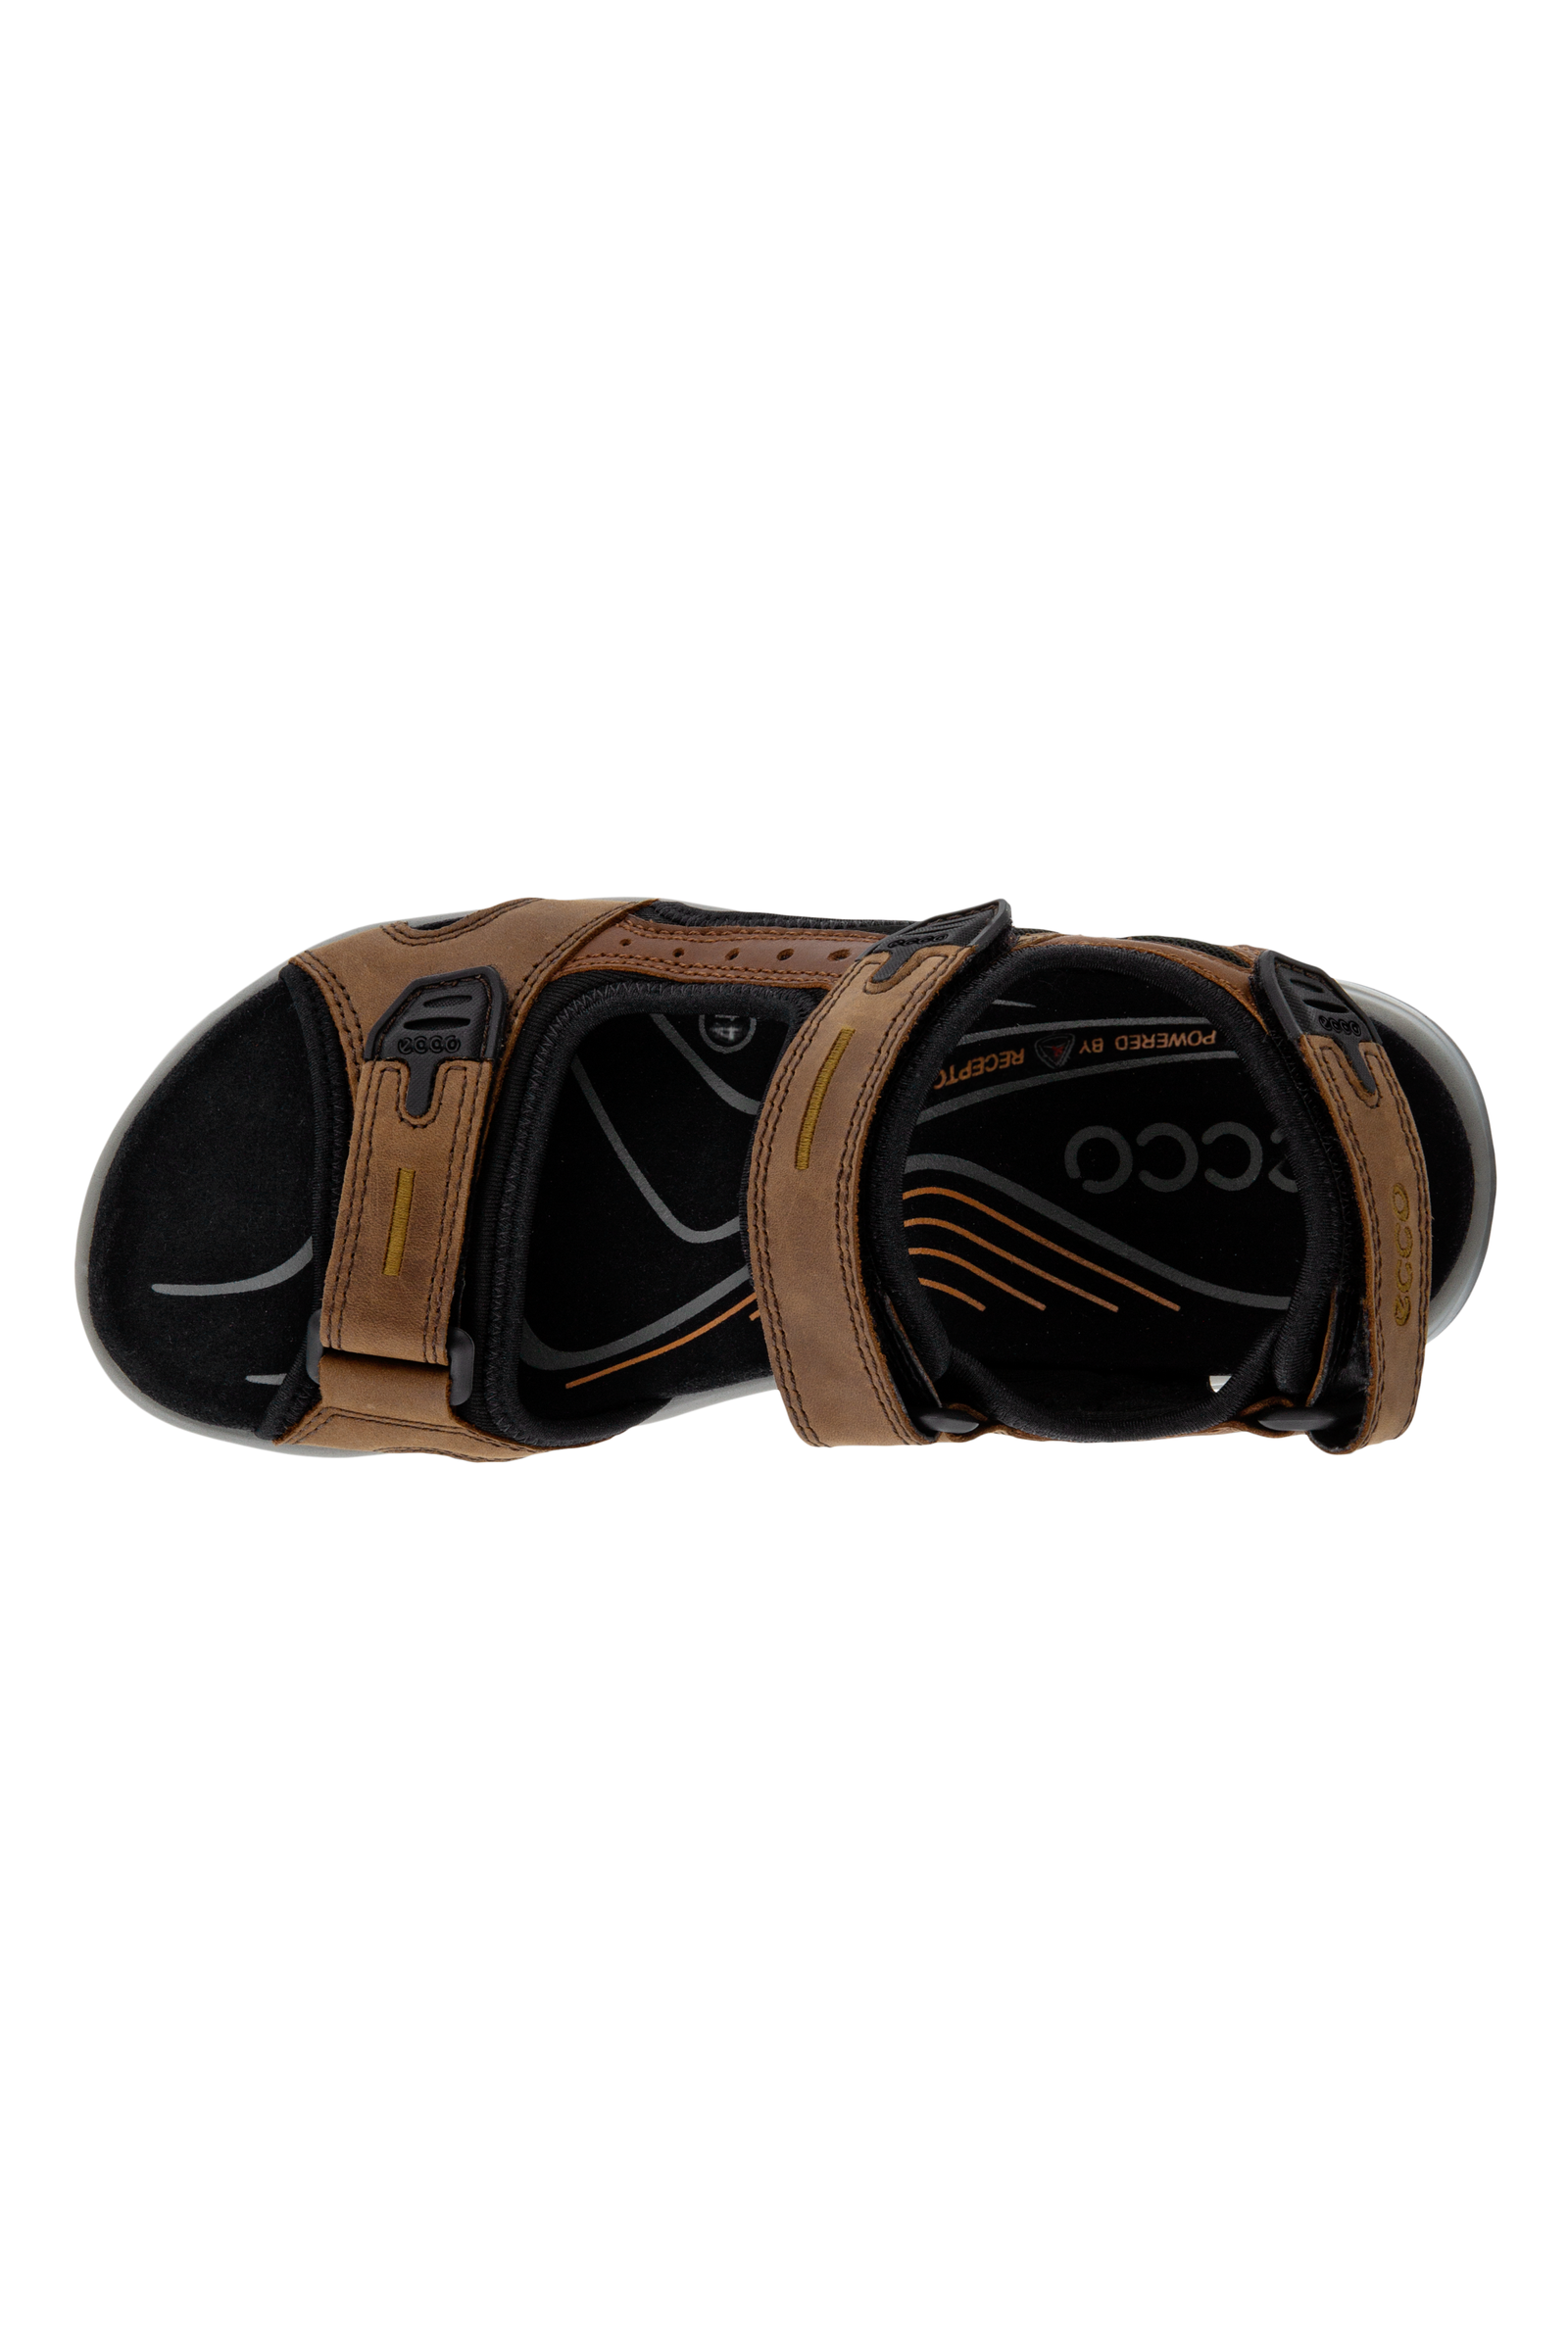 ECCO Offroad Mens Sports Sandal 069564 56401 Espresso